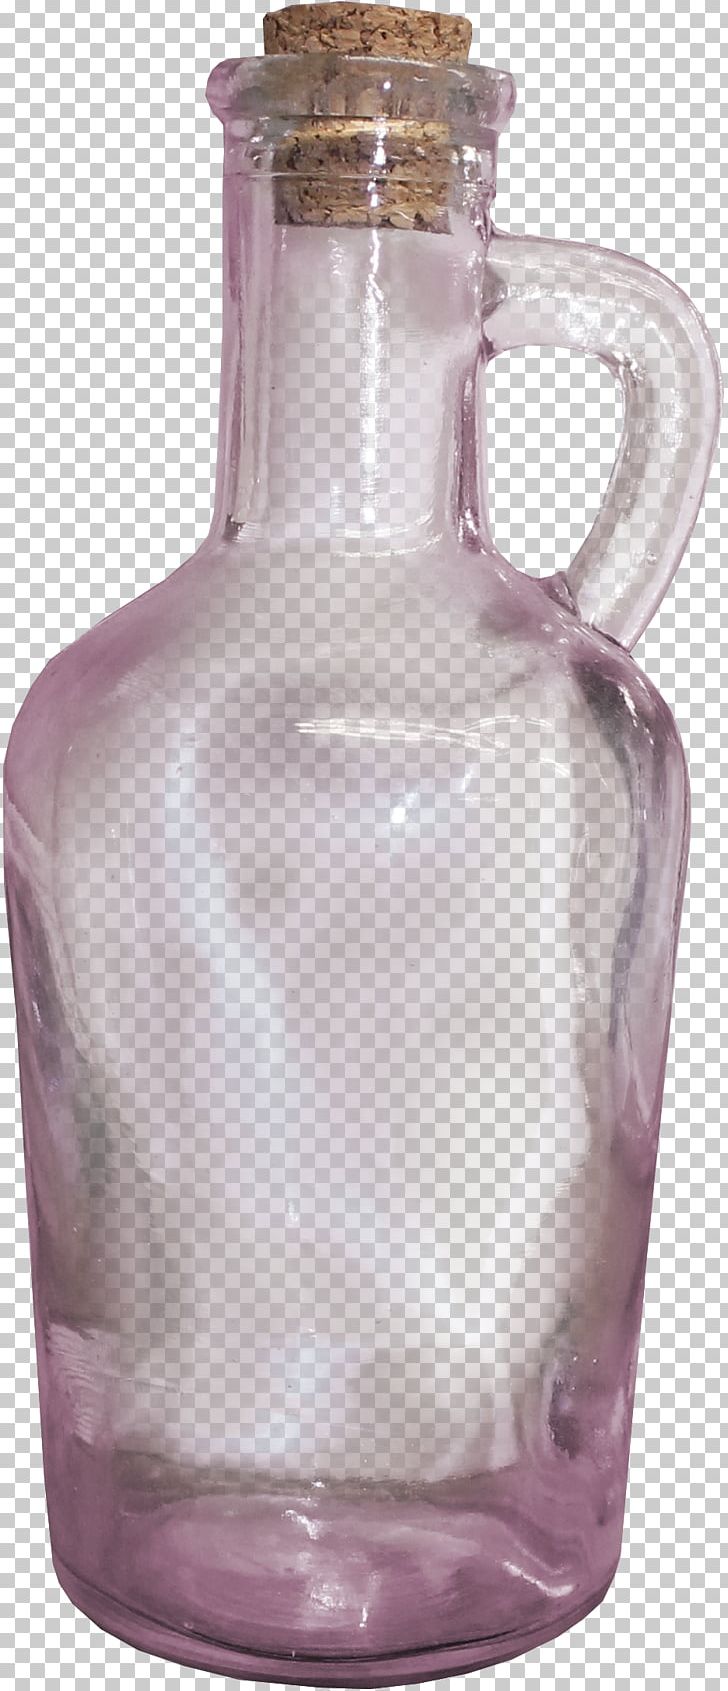 Bottle Glass Euclidean PNG, Clipart, Alcohol Bottle, Barware, Bottle, Bottle Cap, Bottles Free PNG Download